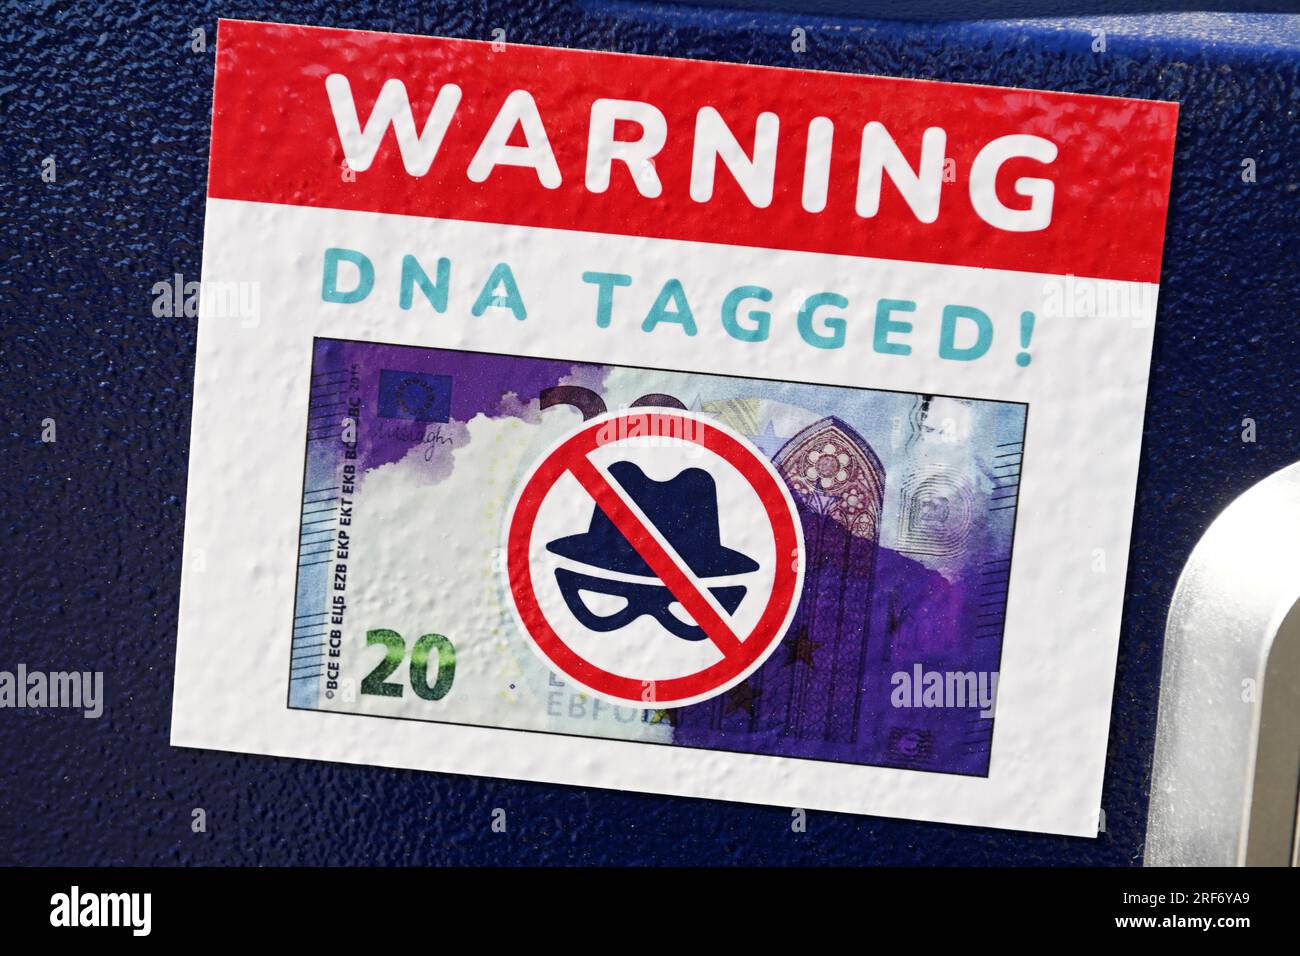 Warnaufkleber für einen mit Farbbomben und künstlicher DNA gesicherten Fahrscheinautomaten Foto Stock